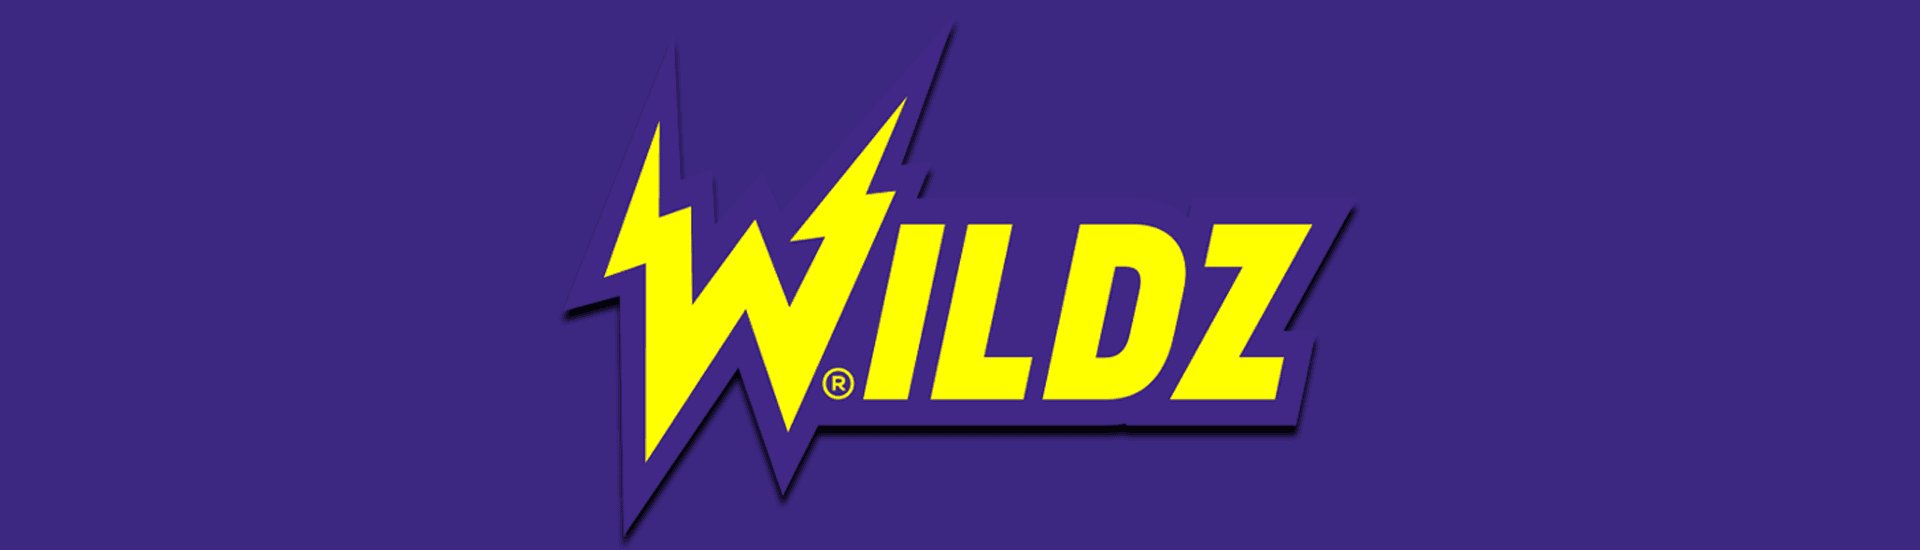 Wildz Featured Image